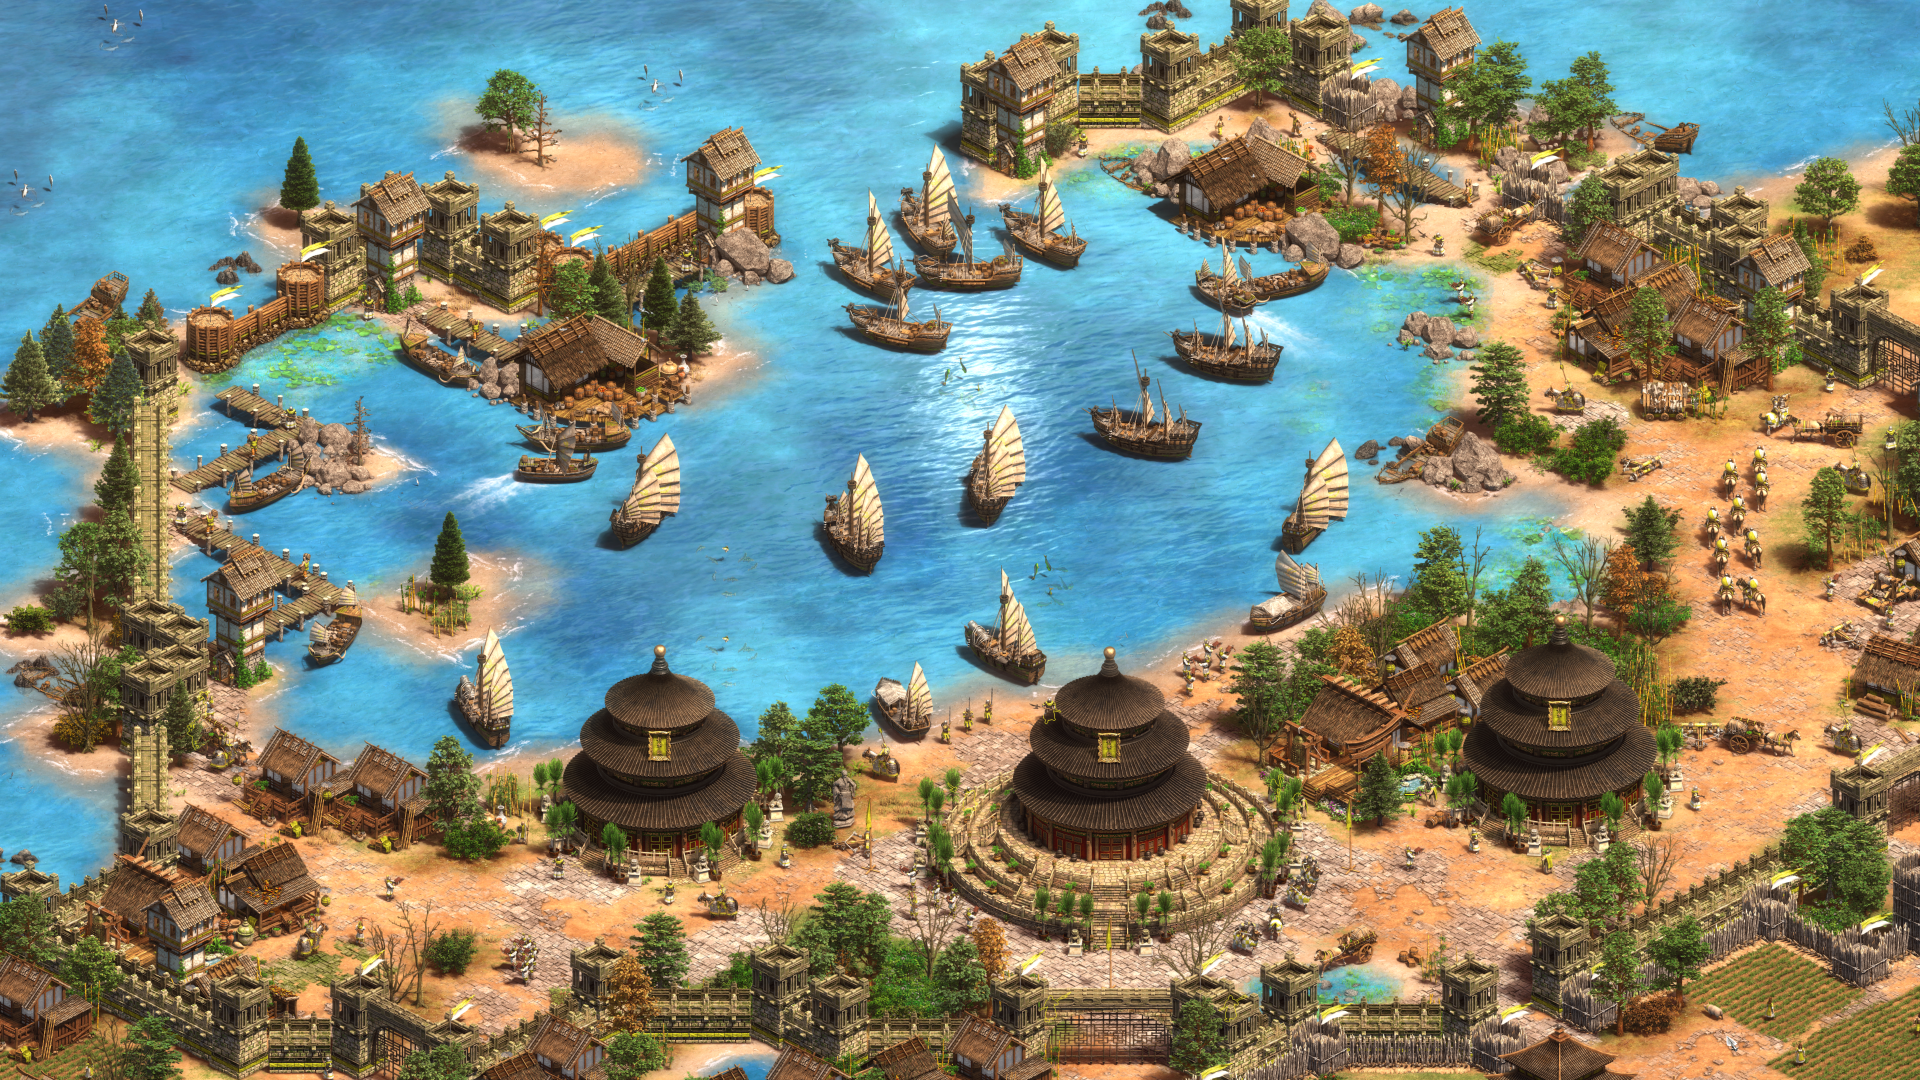 Imagen dentro del juego de una ciudad costera de civilizacion Asiática